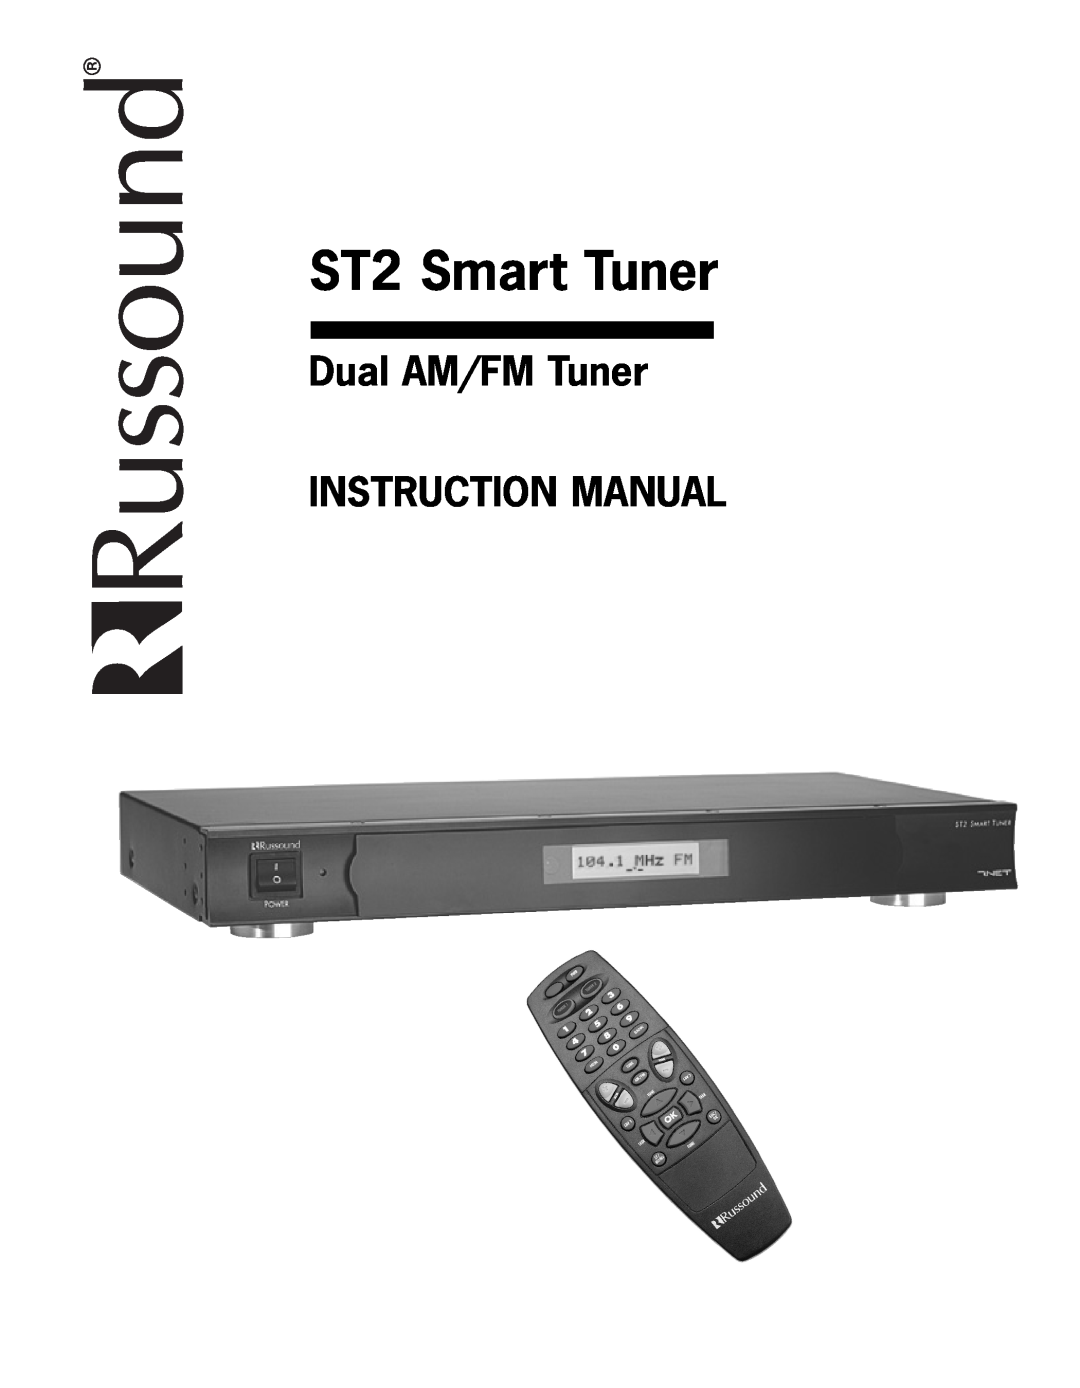 Integra instruction manual ST2 Smart Tuner 